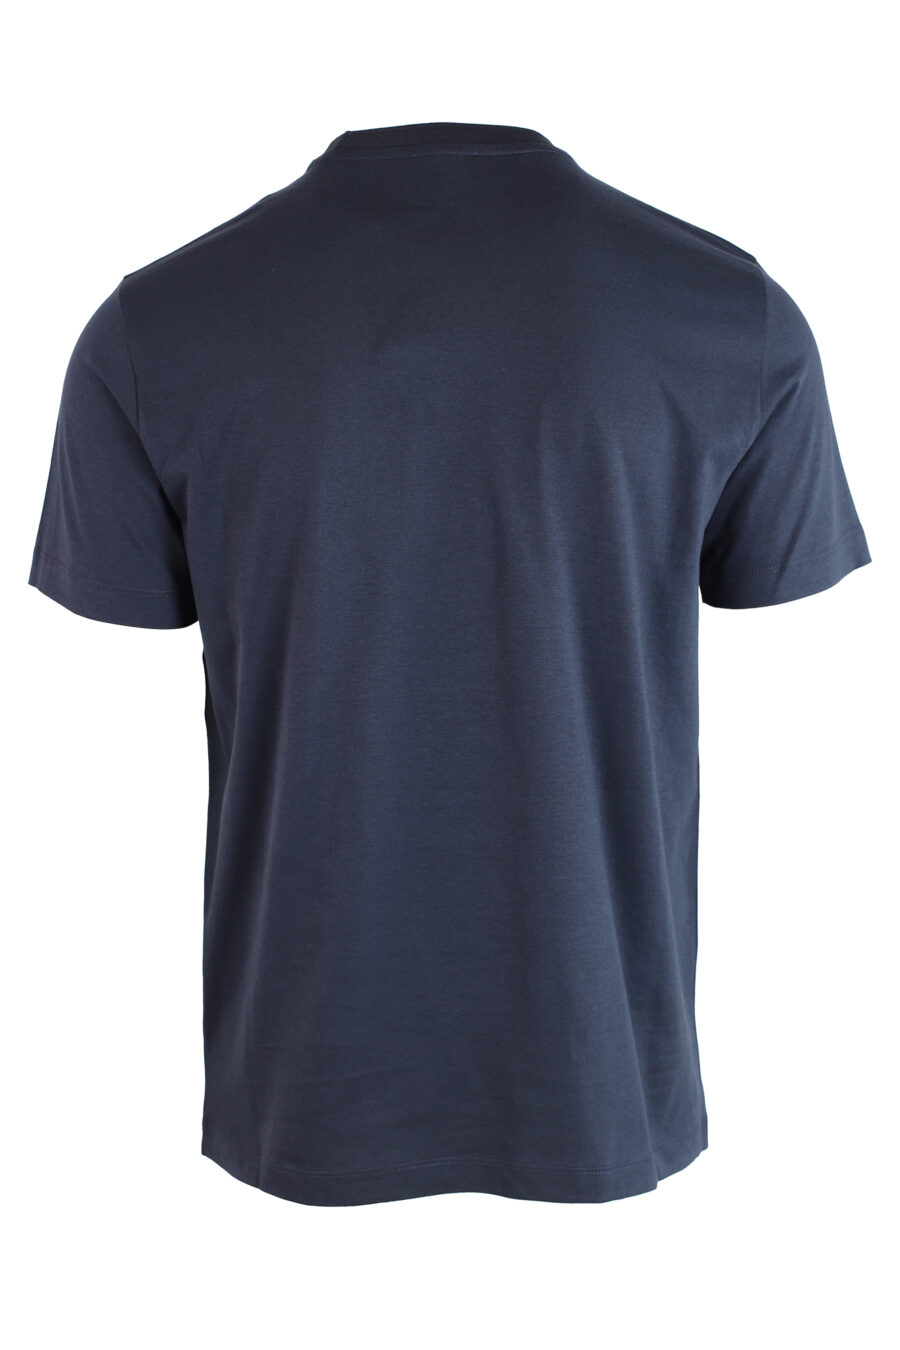 T-shirt azul escura com mini logótipo em dourado - IMG 3224